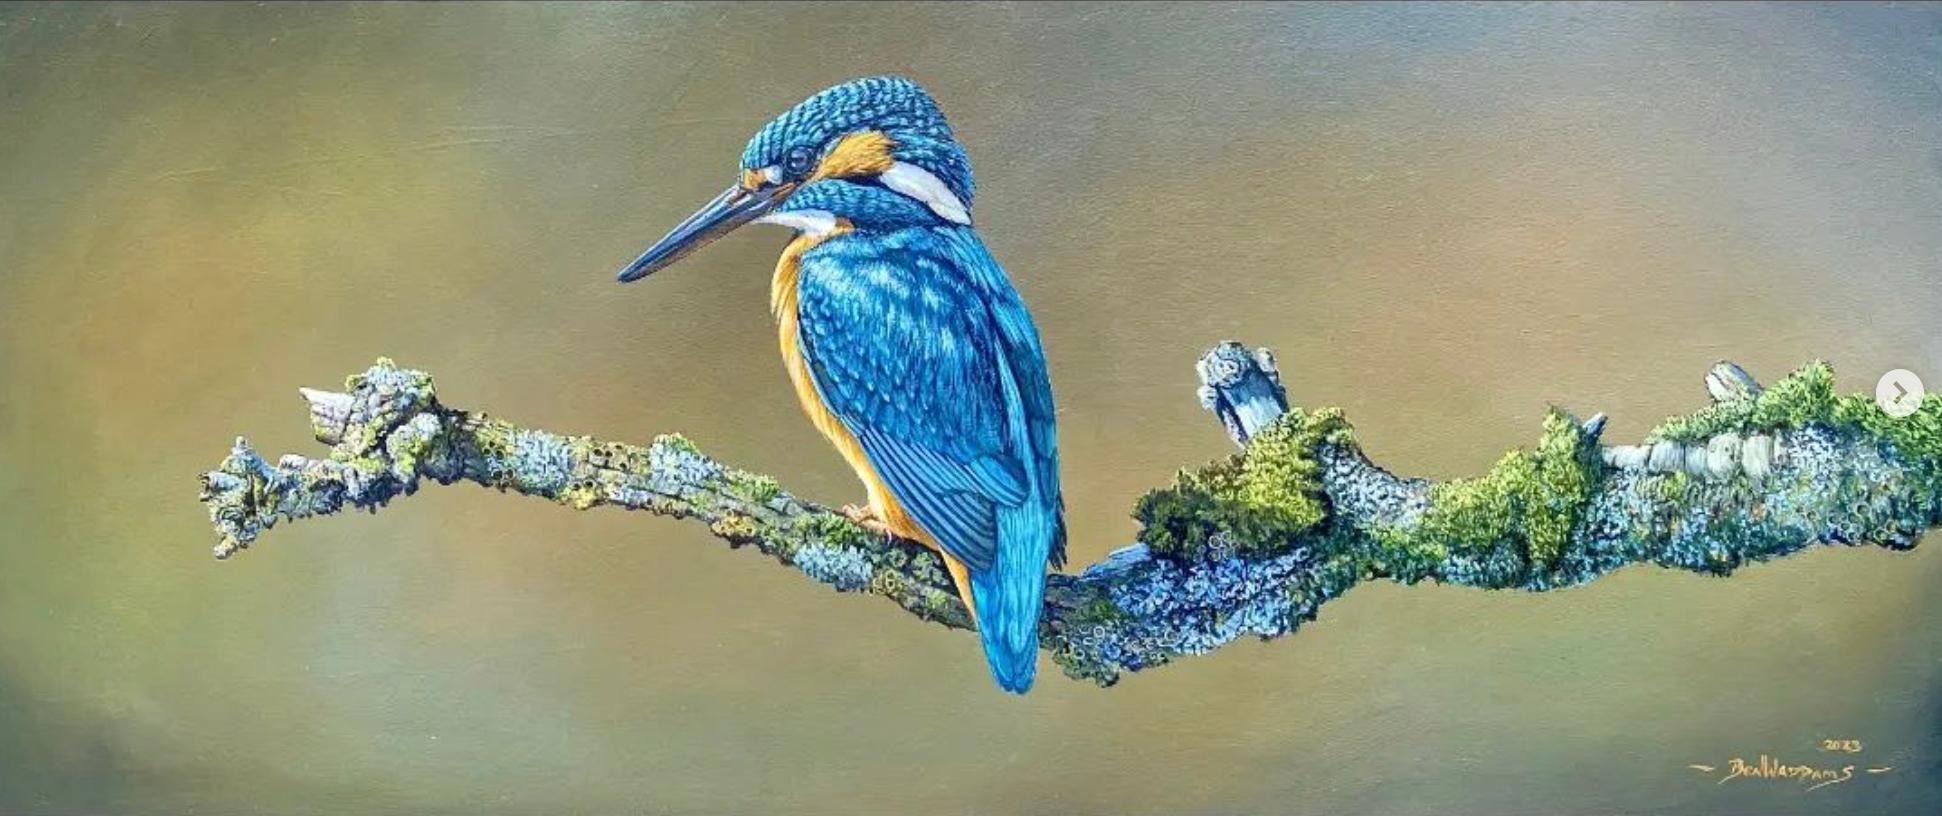 A Moment rest' Fotorealistisches Gemälde eines Kingfishers in freier Wildbahn, blau, orange